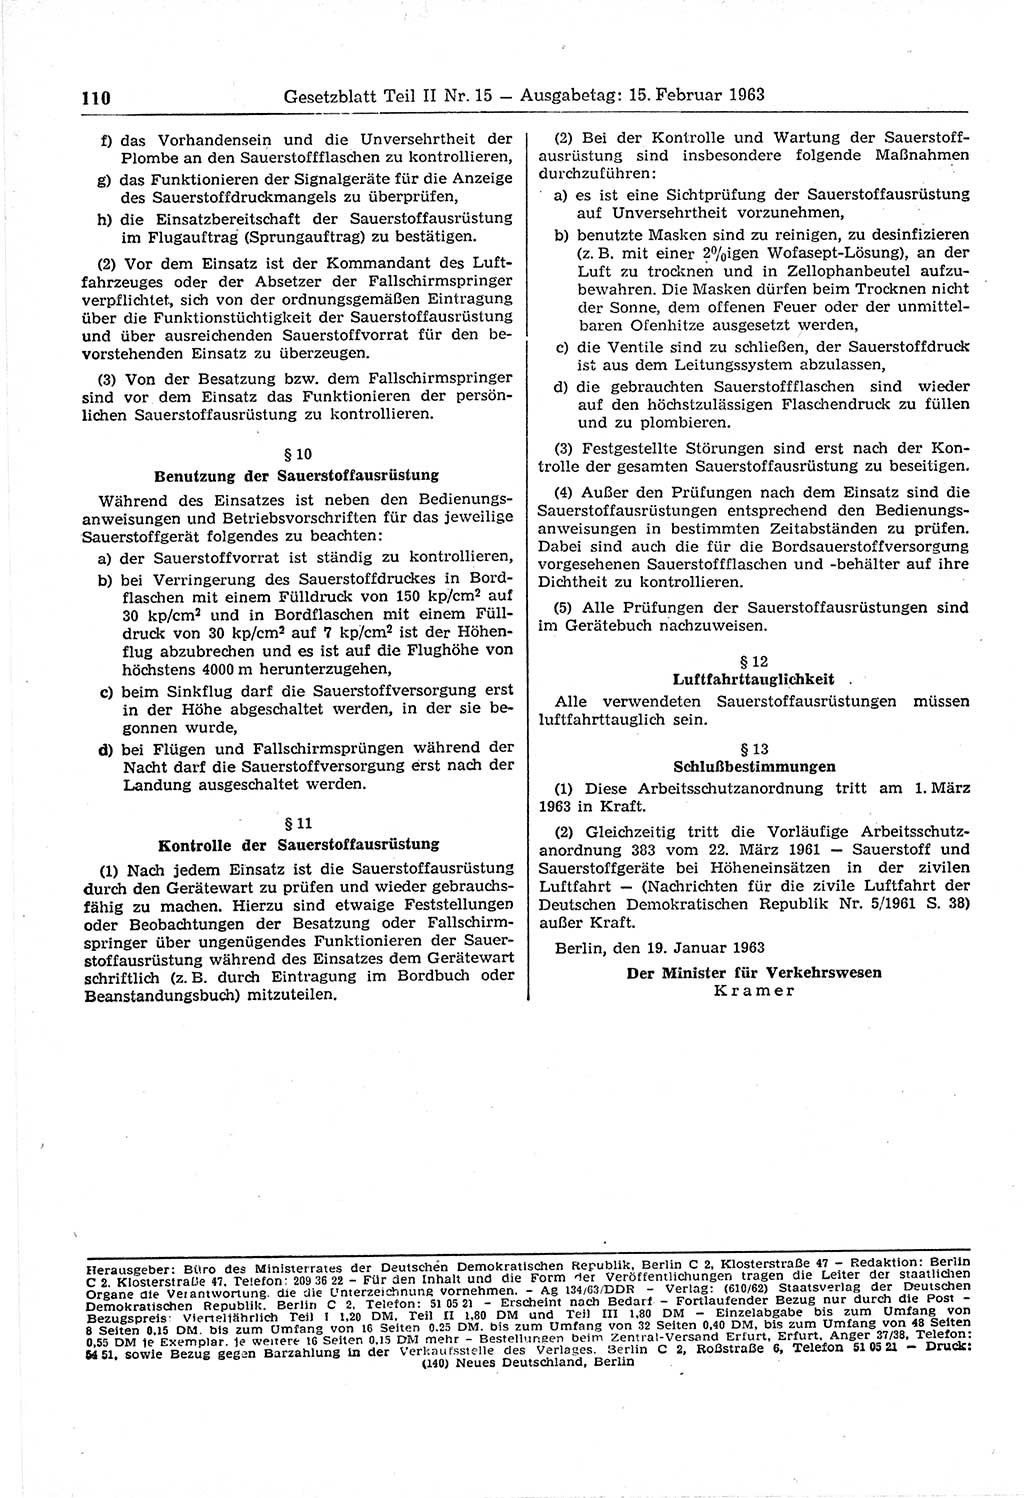 Gesetzblatt (GBl.) der Deutschen Demokratischen Republik (DDR) Teil ⅠⅠ 1963, Seite 110 (GBl. DDR ⅠⅠ 1963, S. 110)